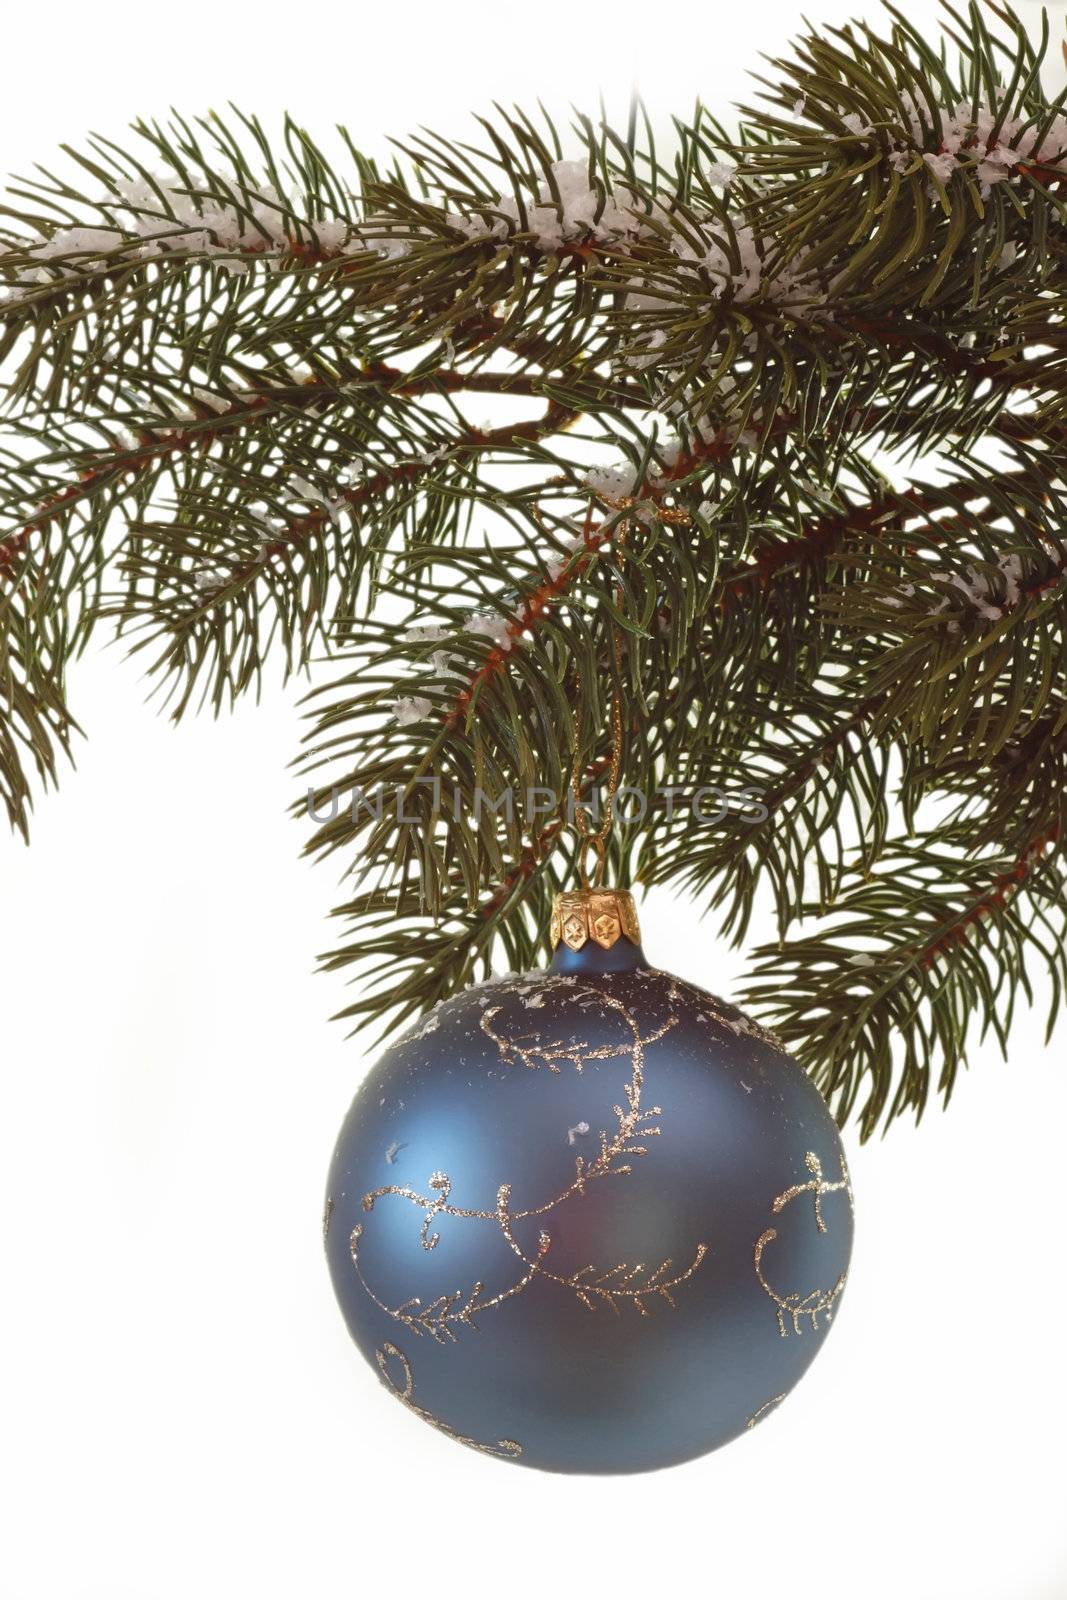 Blue christmas glitter ball hanging on a fir branch